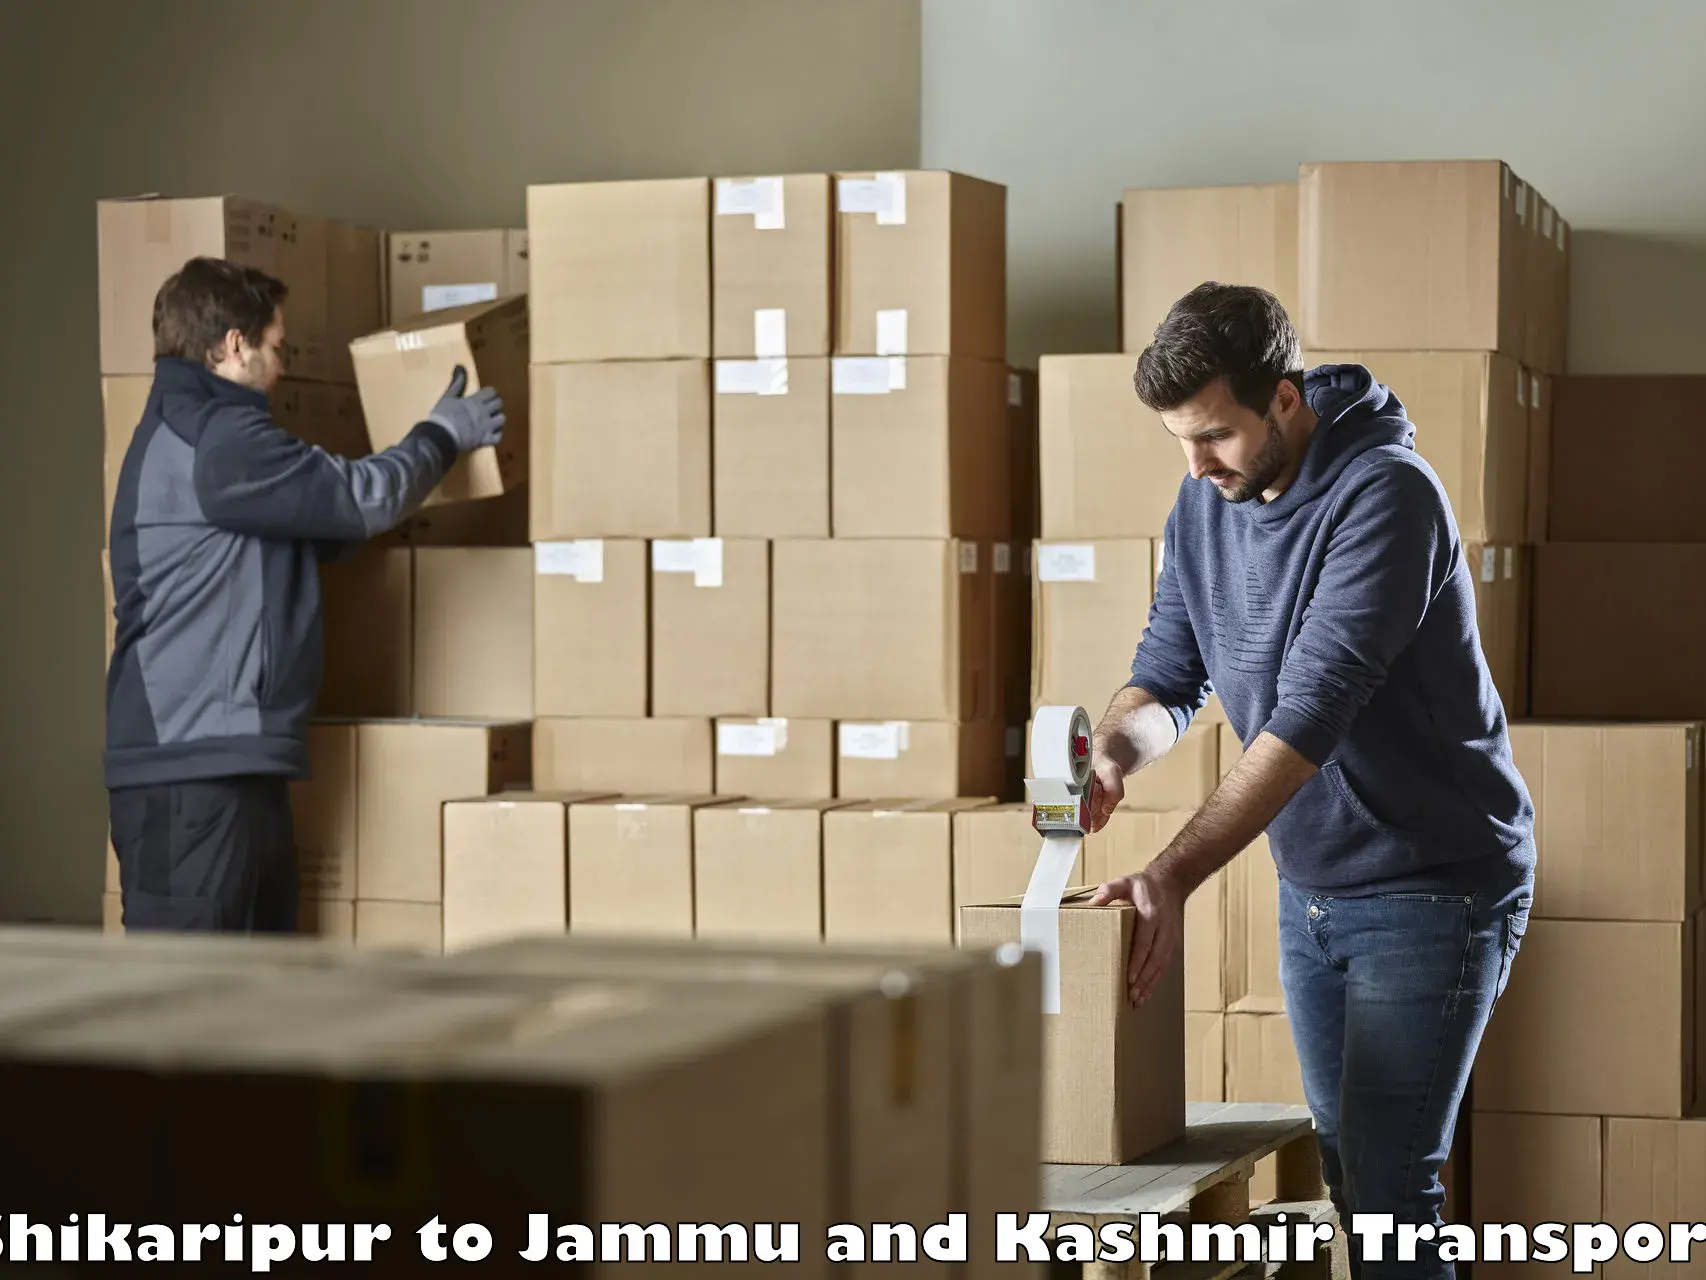 Furniture transport service Shikaripur to IIT Jammu